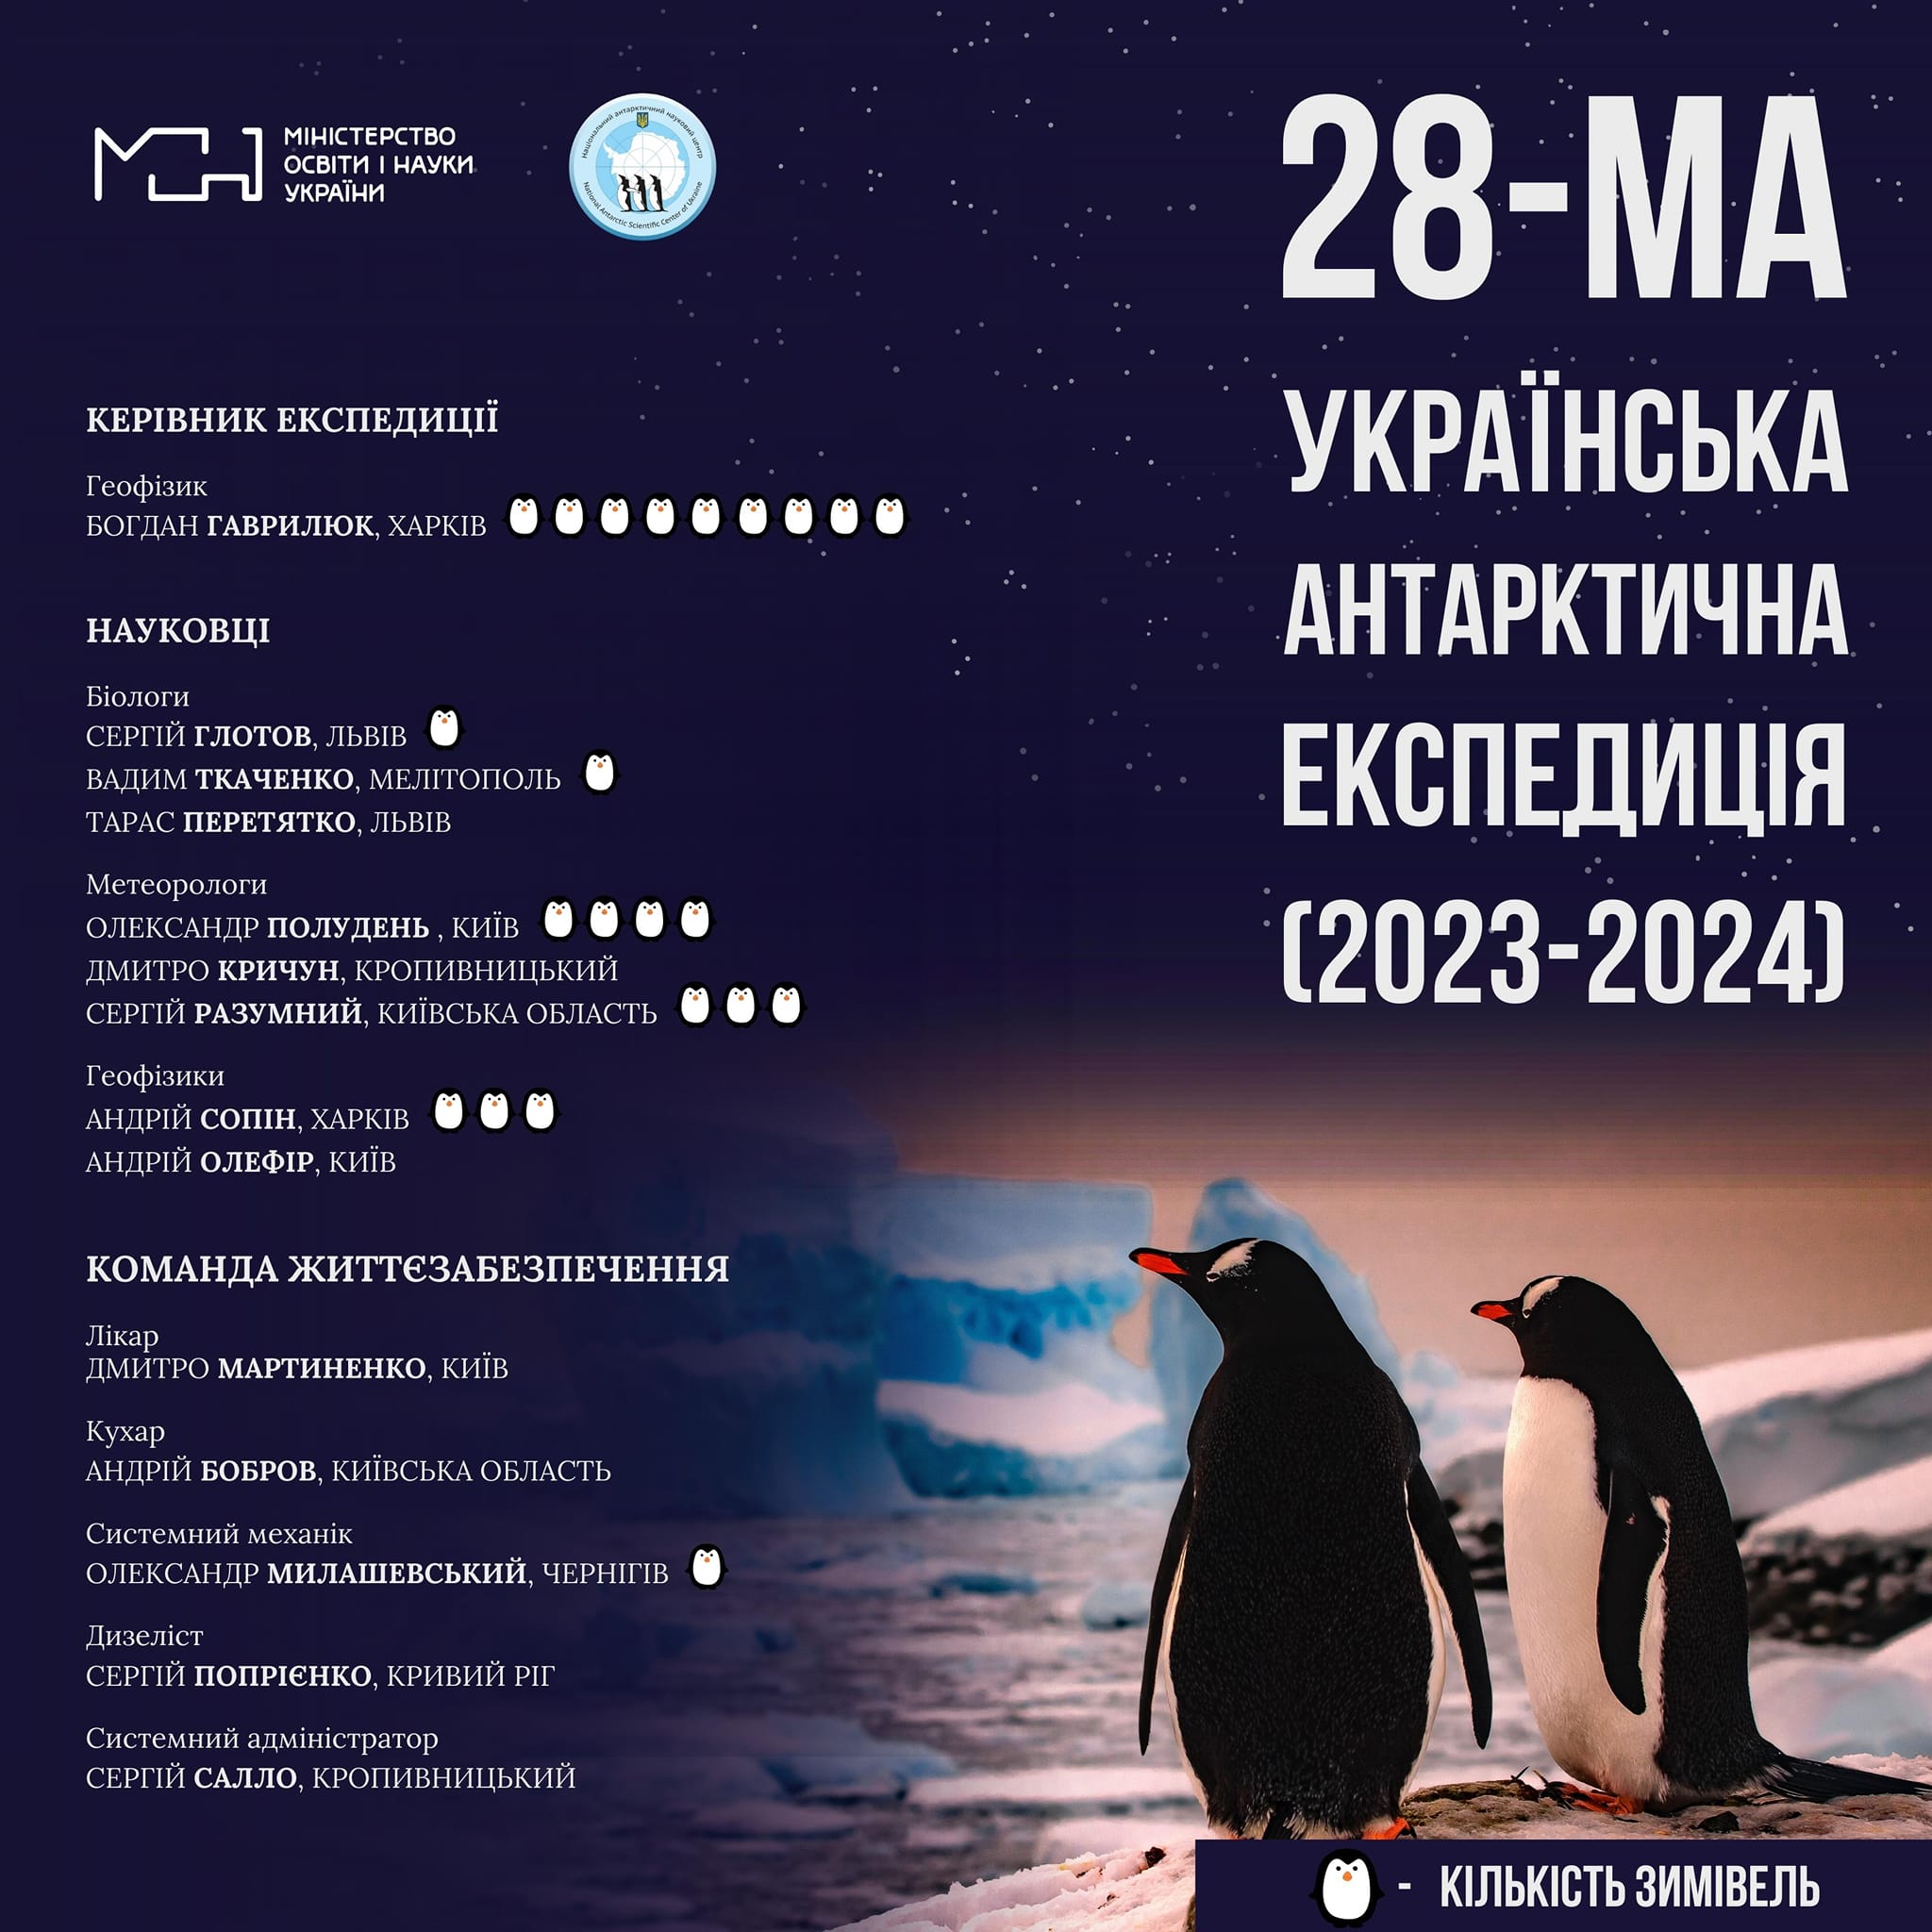 Харків’янин Гаврилюк очолив 28-му Українську Антарктичну експедицію